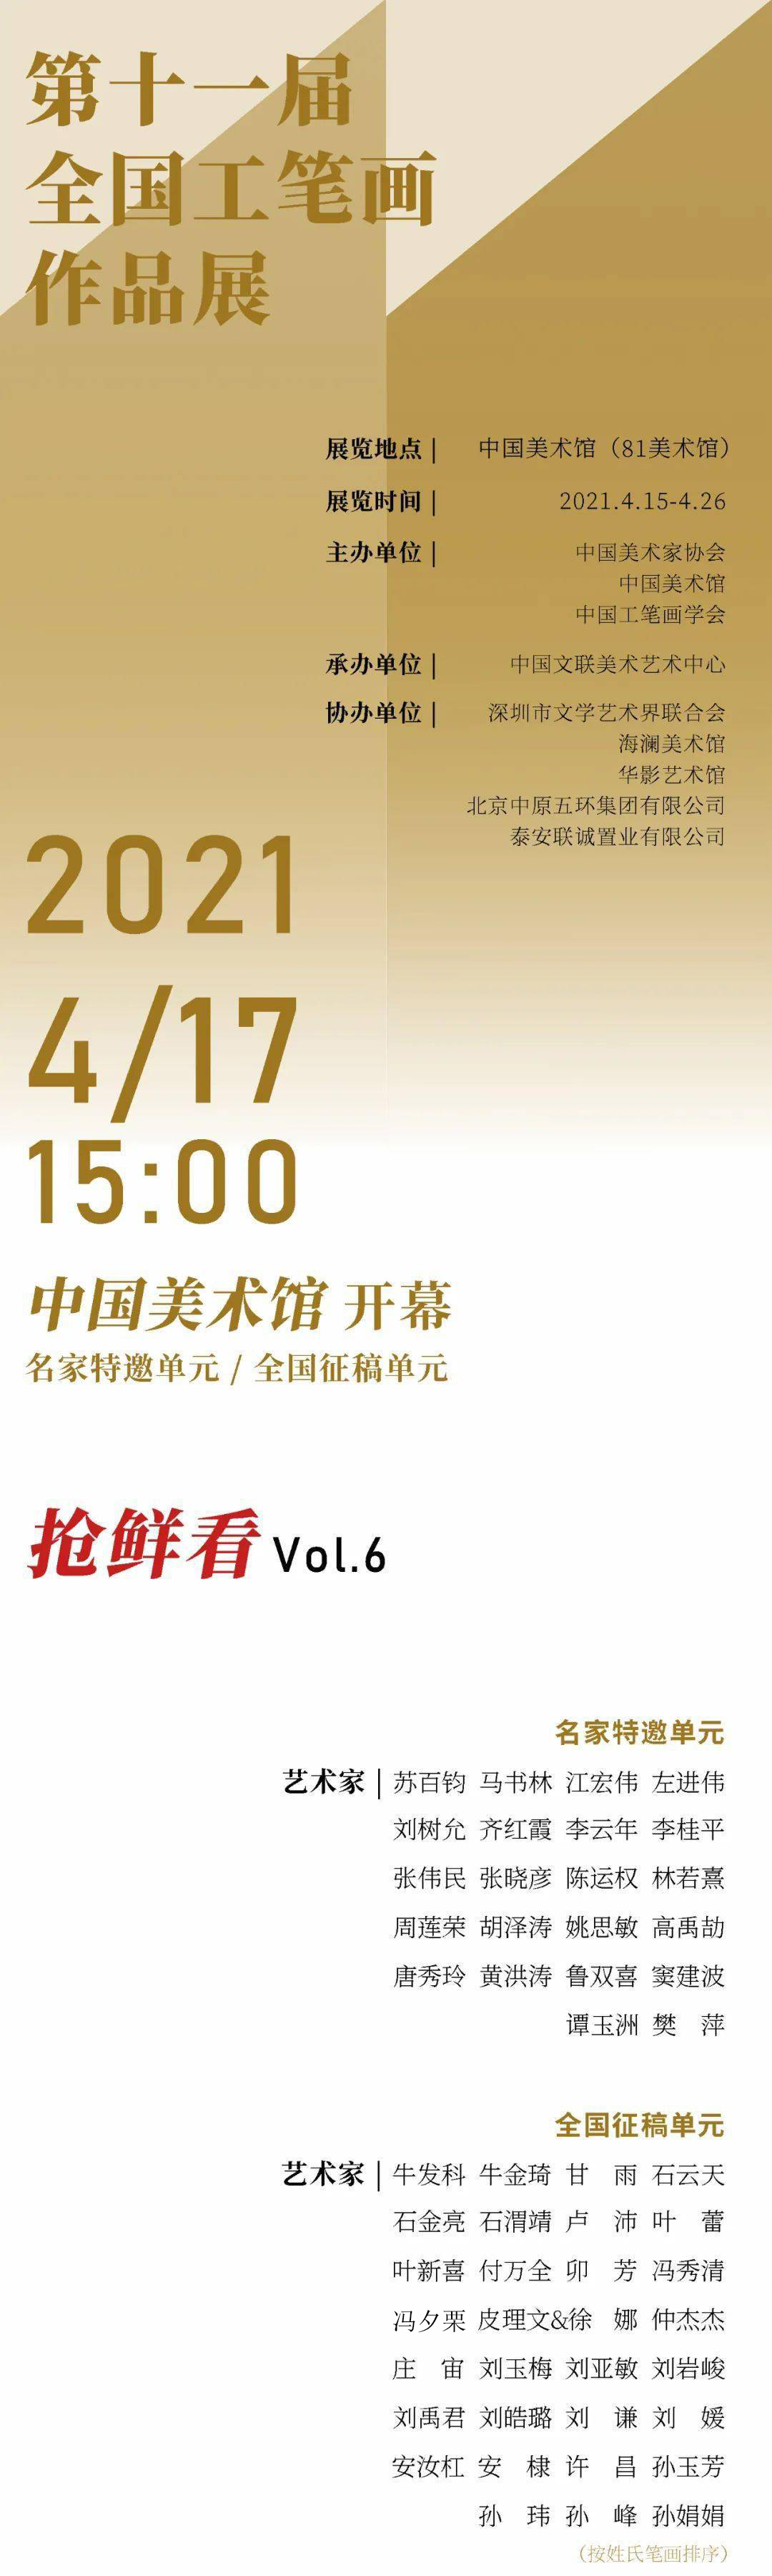 抢鲜看Vol. 6：十一届工笔画大展| 198位中国美协入会资格画家全名单